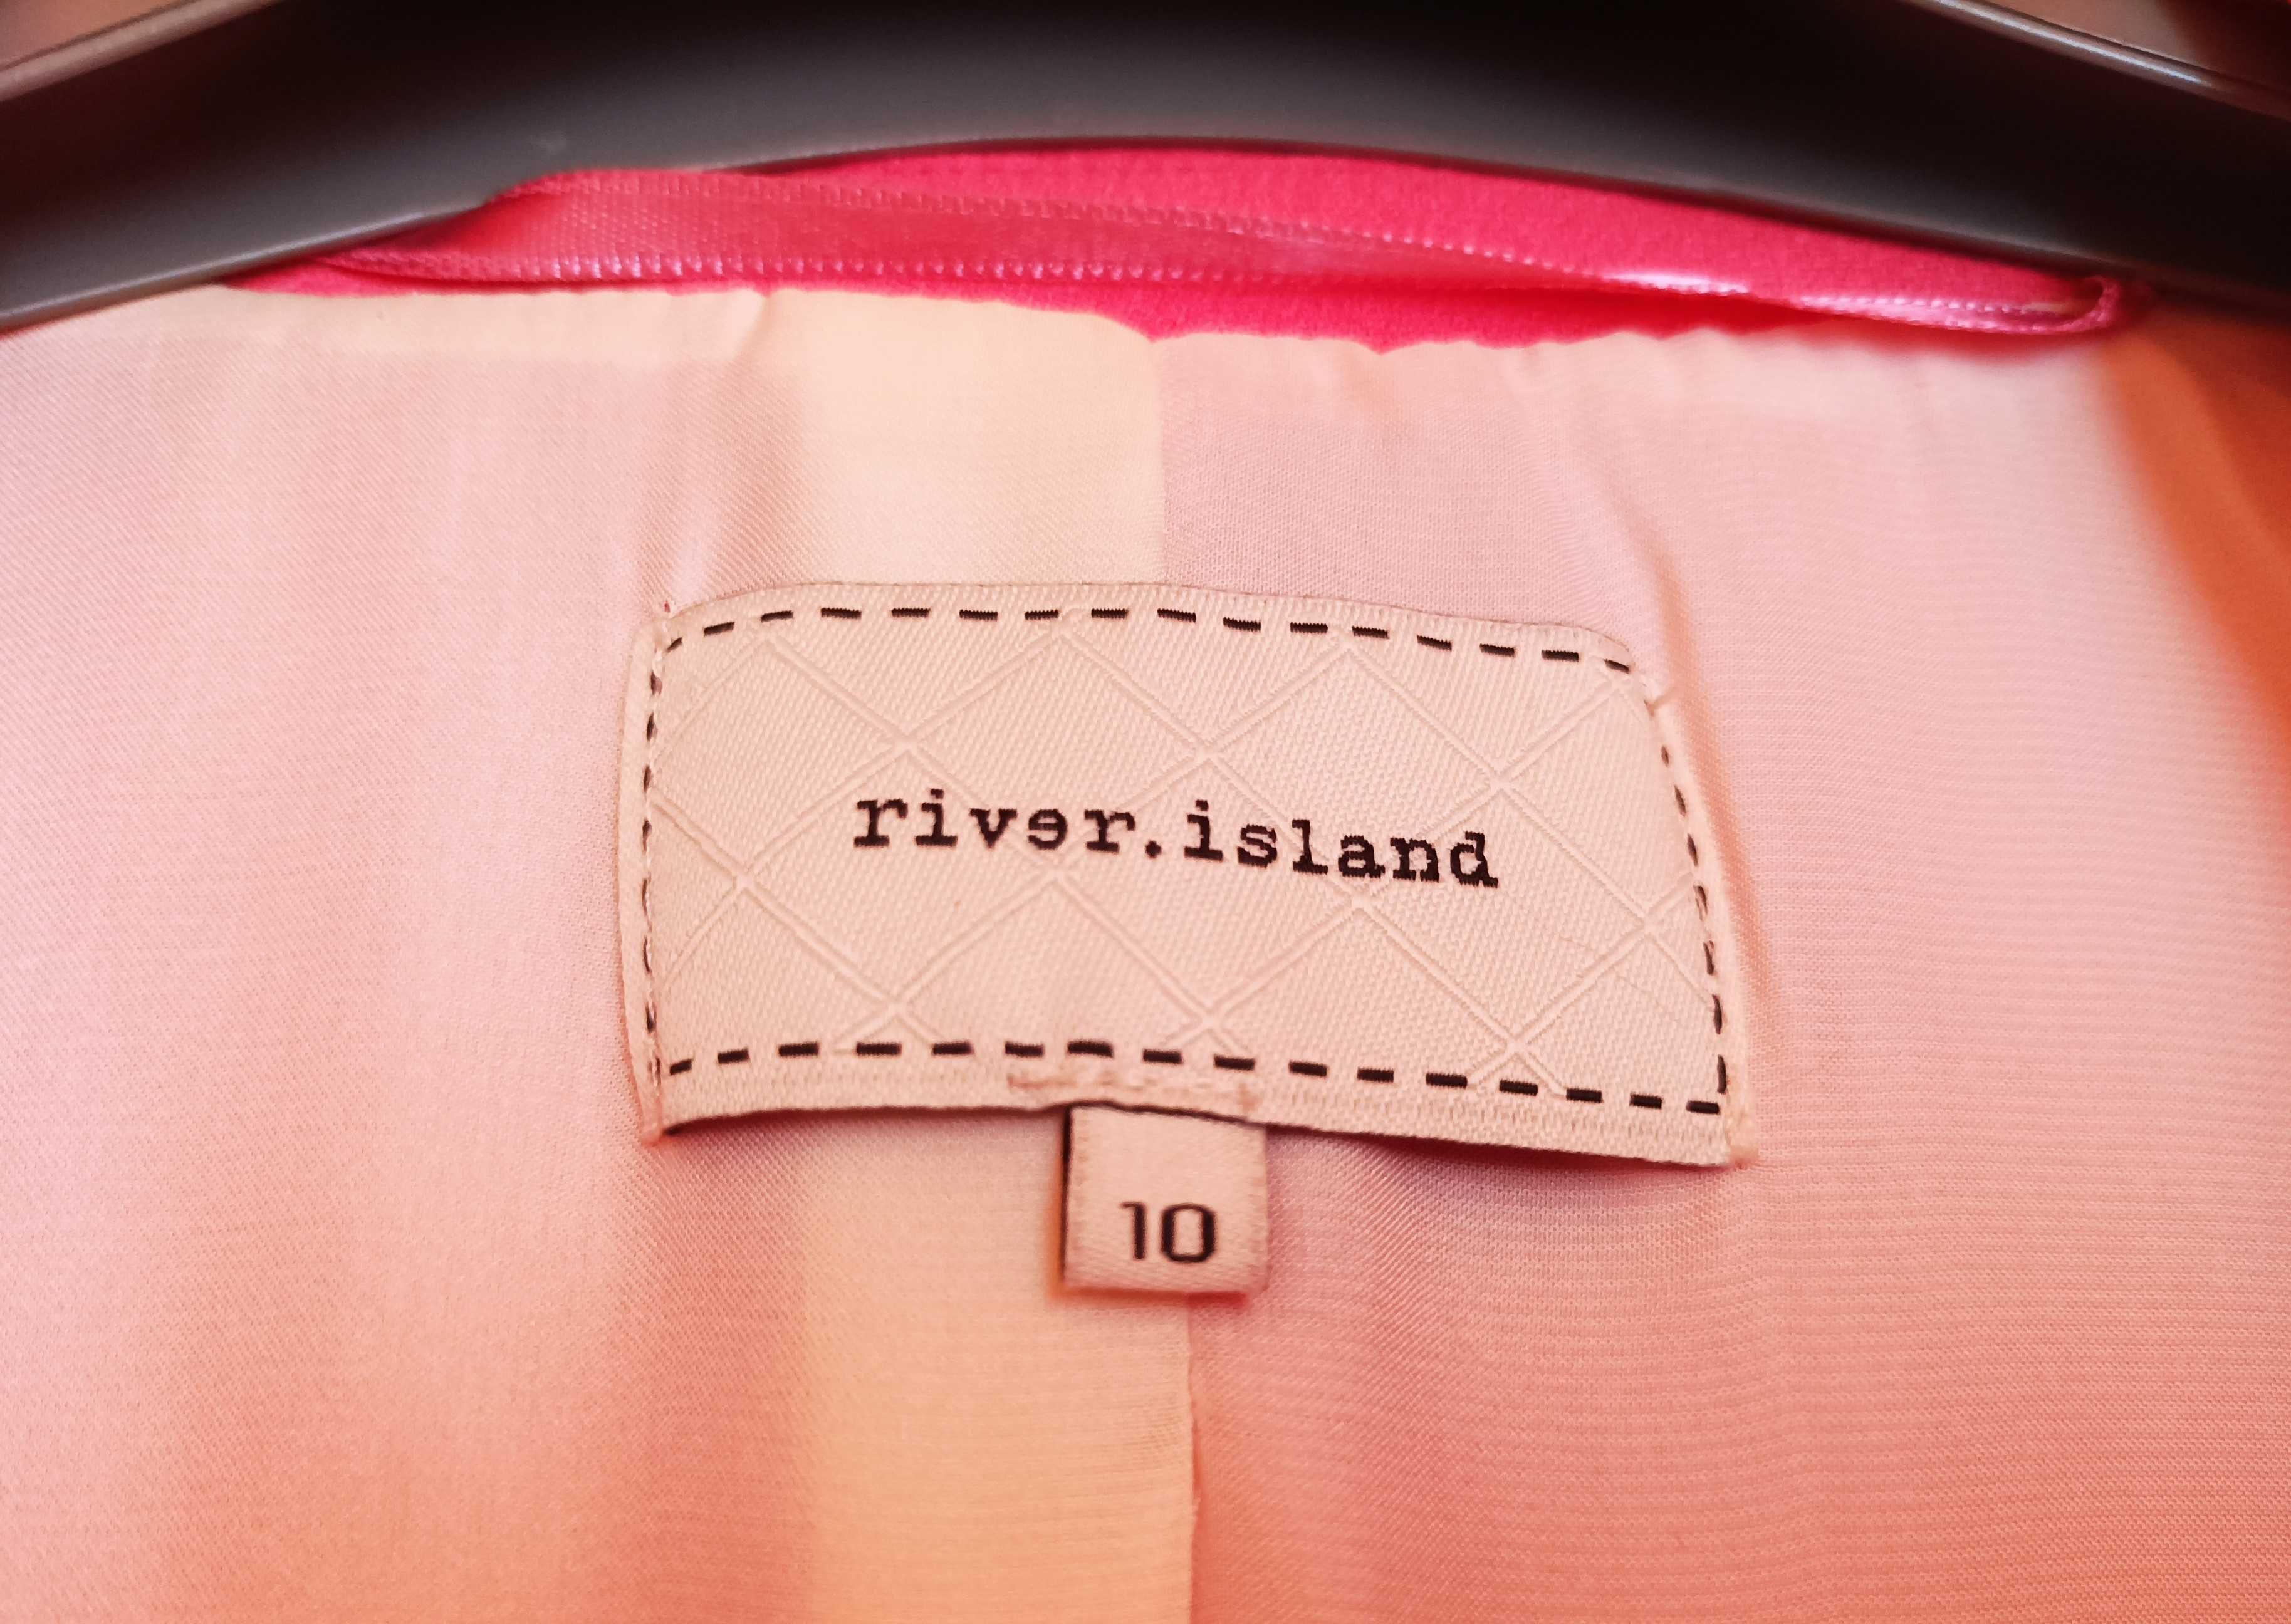 Żakiet River Island, kolor Różowy, rozm 36, na podszewce.